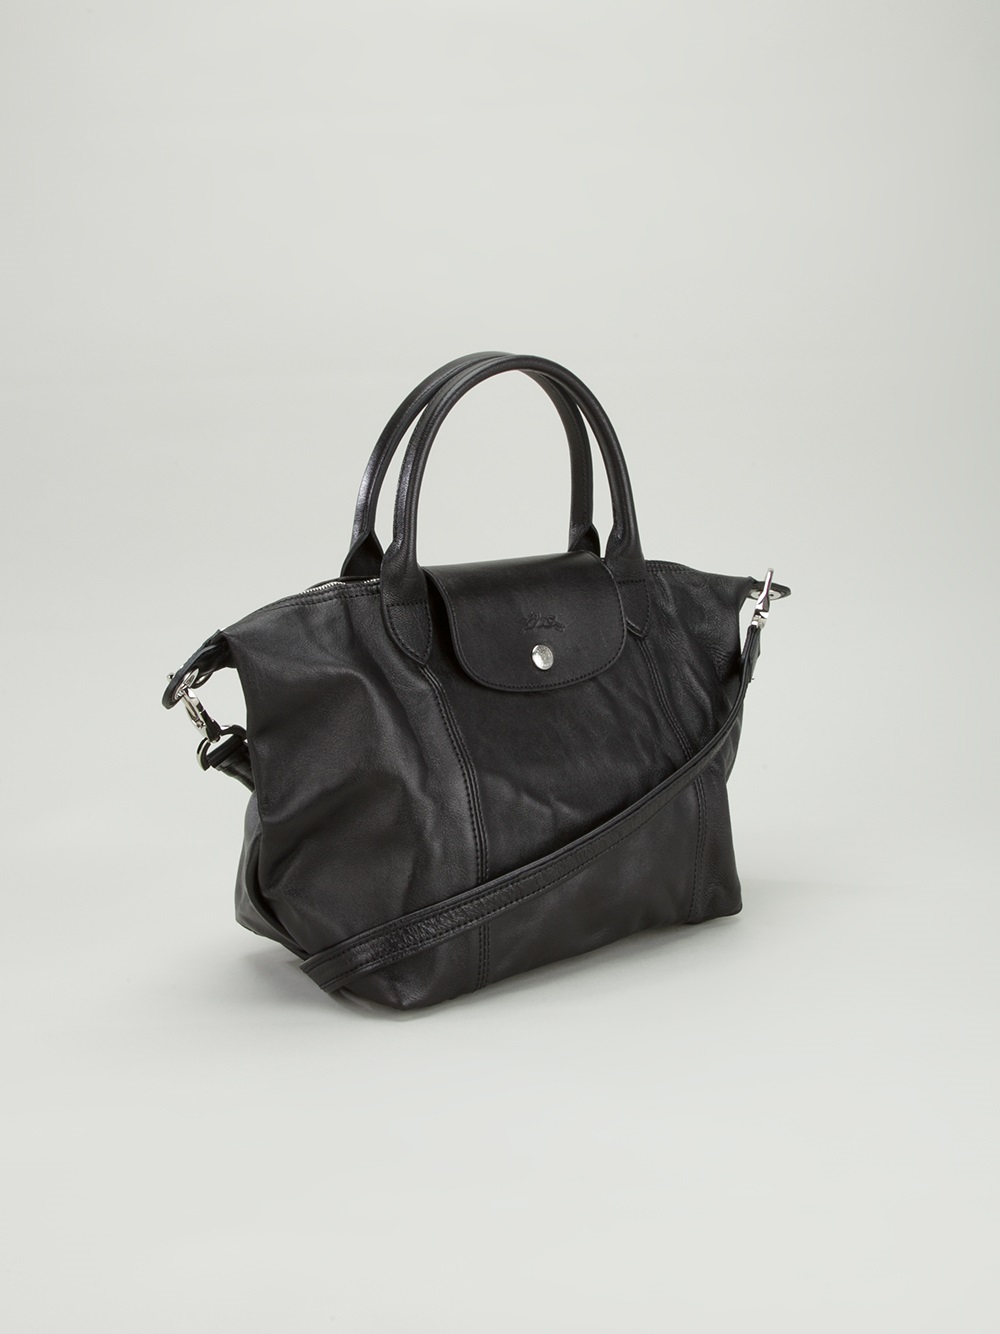 Shop: Longchamp Bags On Zalora | Preview.ph